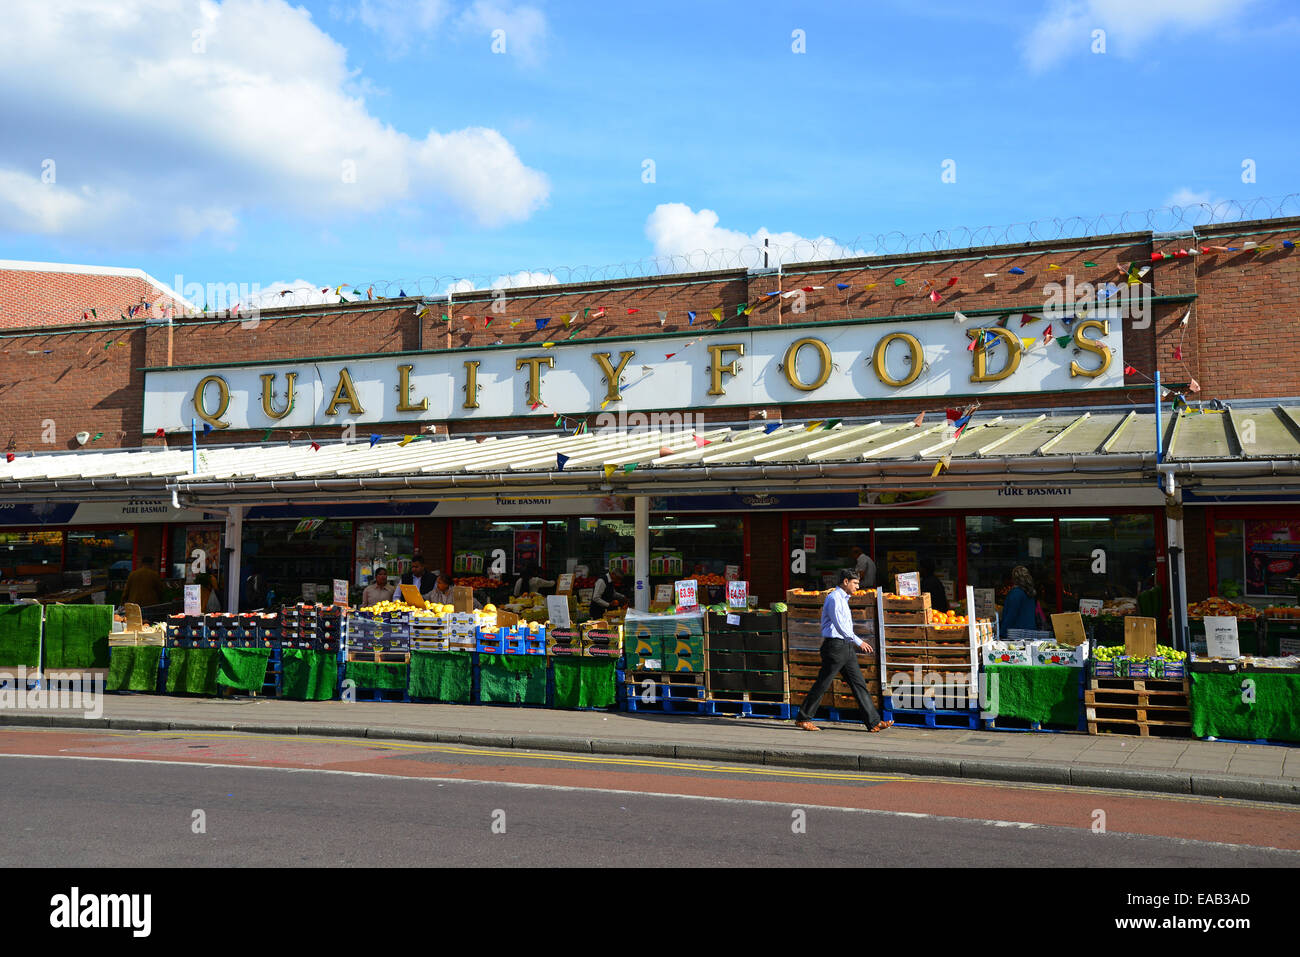 Il cibo di qualità di bancarelle, South Street, Southall, London Borough of Ealing, Greater London, England, Regno Unito Foto Stock